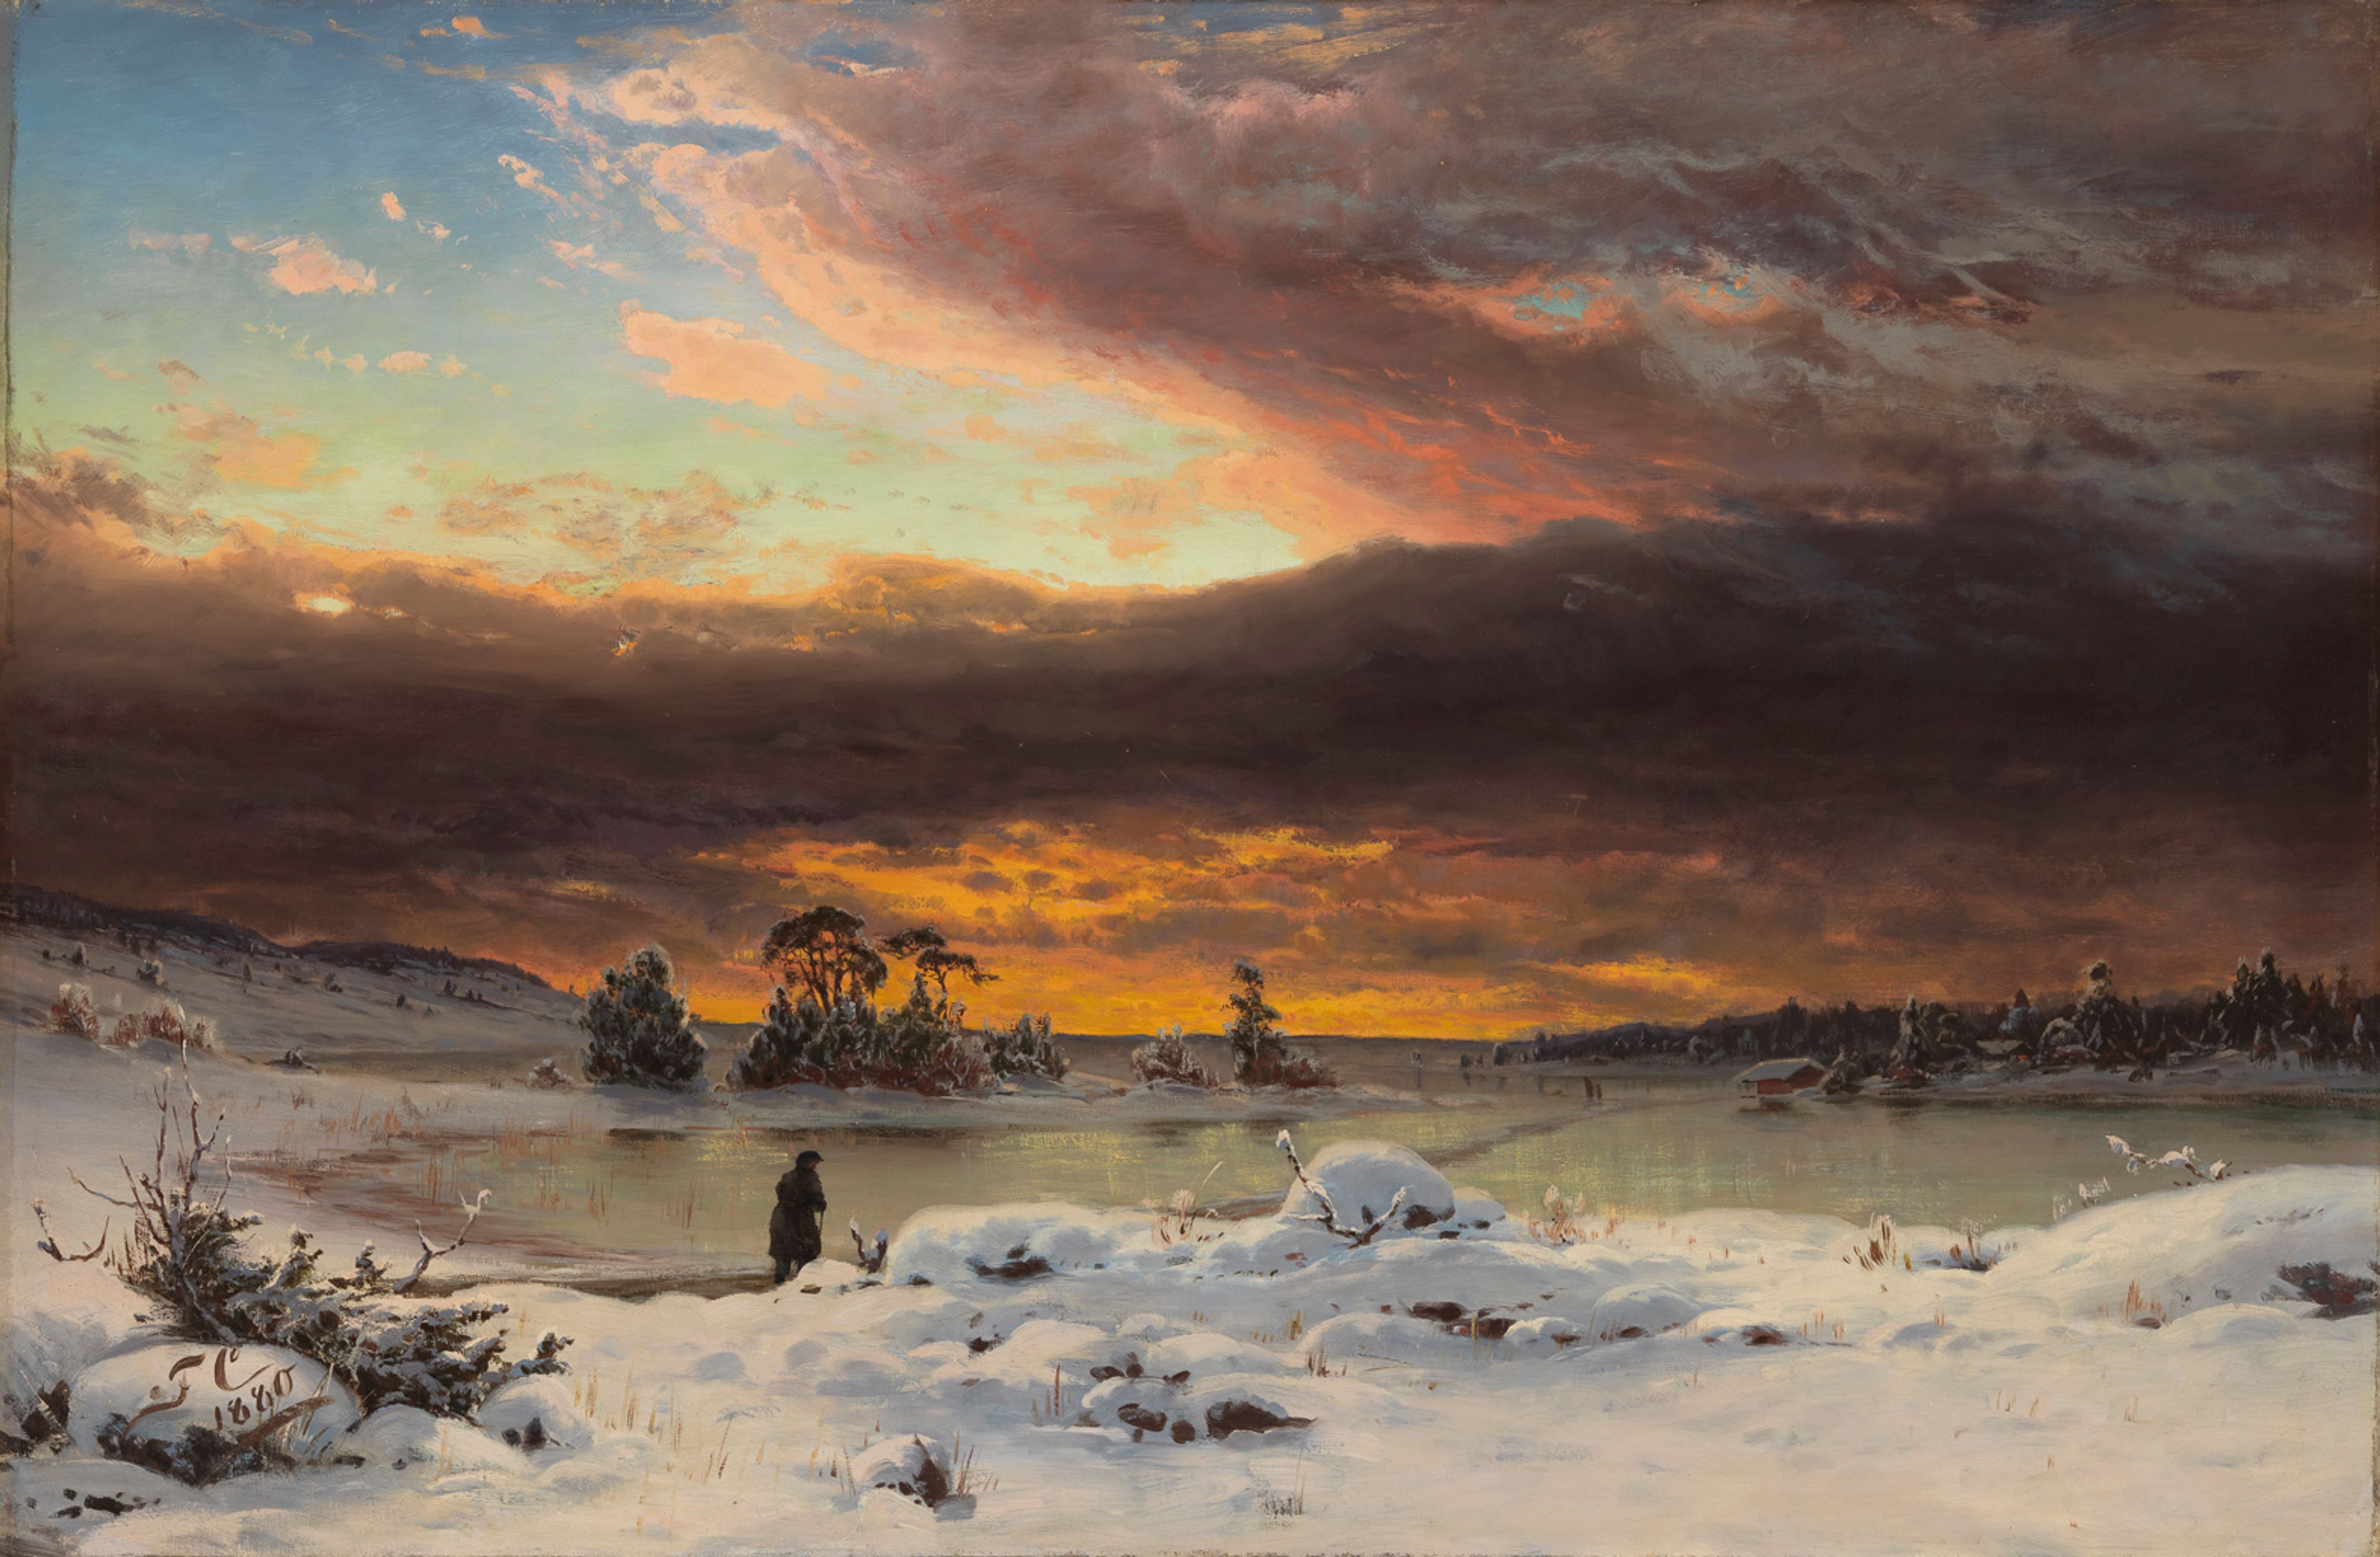 Kış Manzarası, Akşam Havası by Fanny Churberg - 1880 - 73,5 x 105 cm 